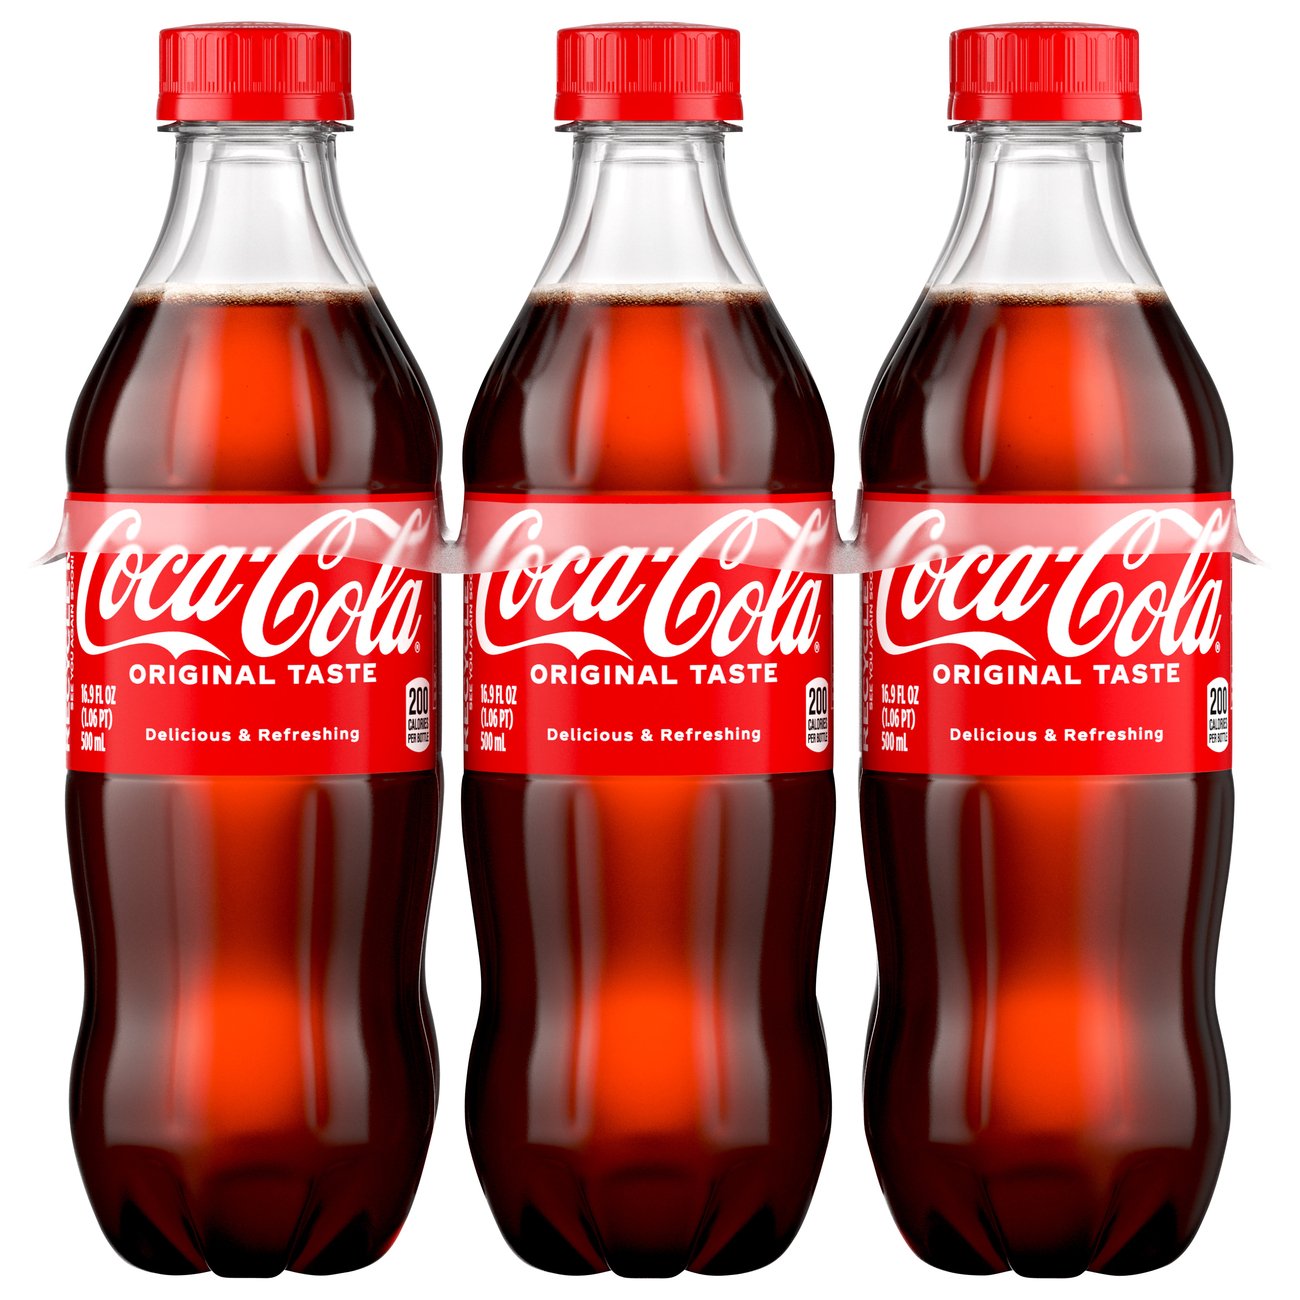 Coca-Cola Original - Nutrition Facts & Ingredients